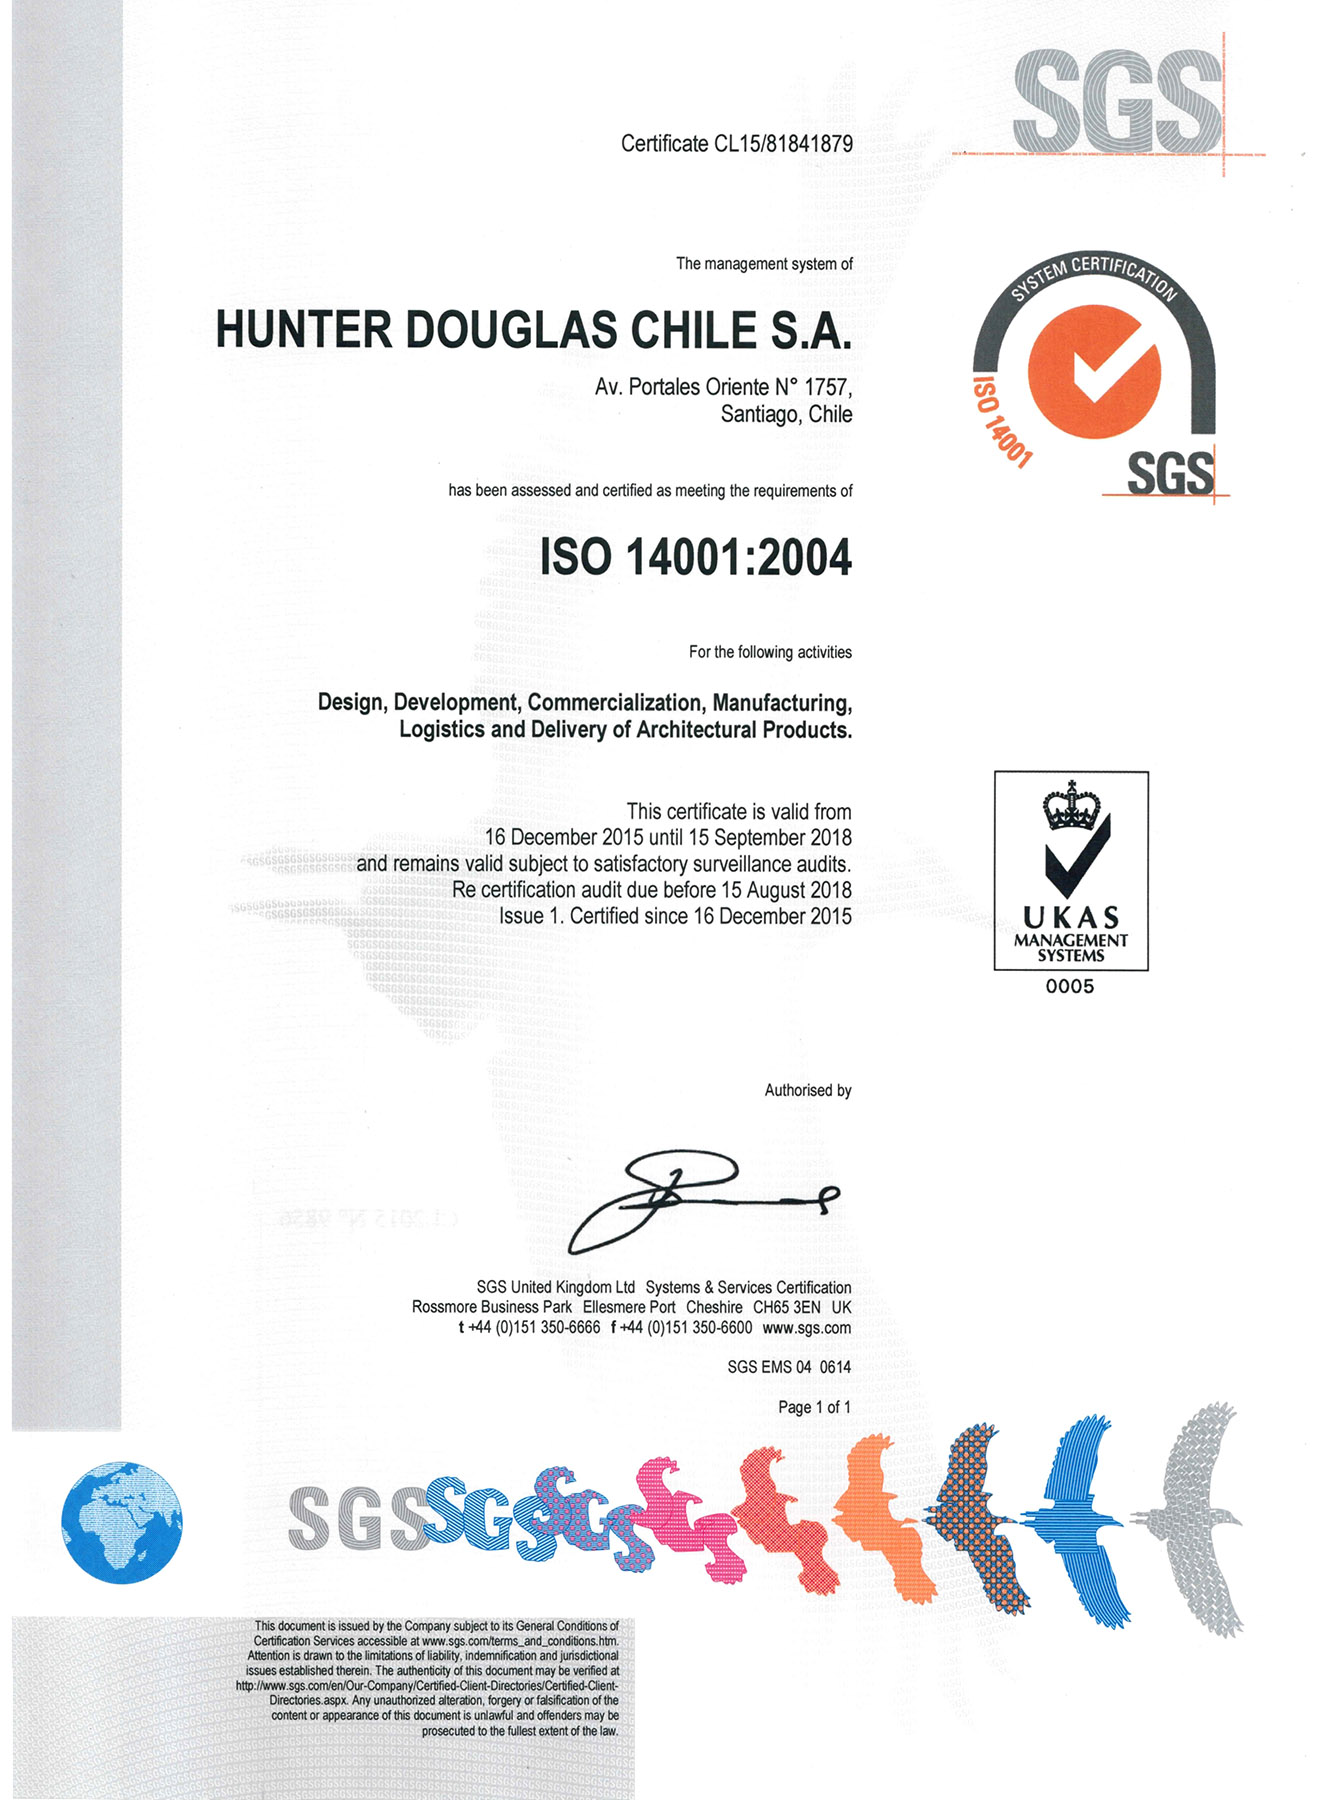 Certificación ISO 14001 enews imagenes imagen 6196